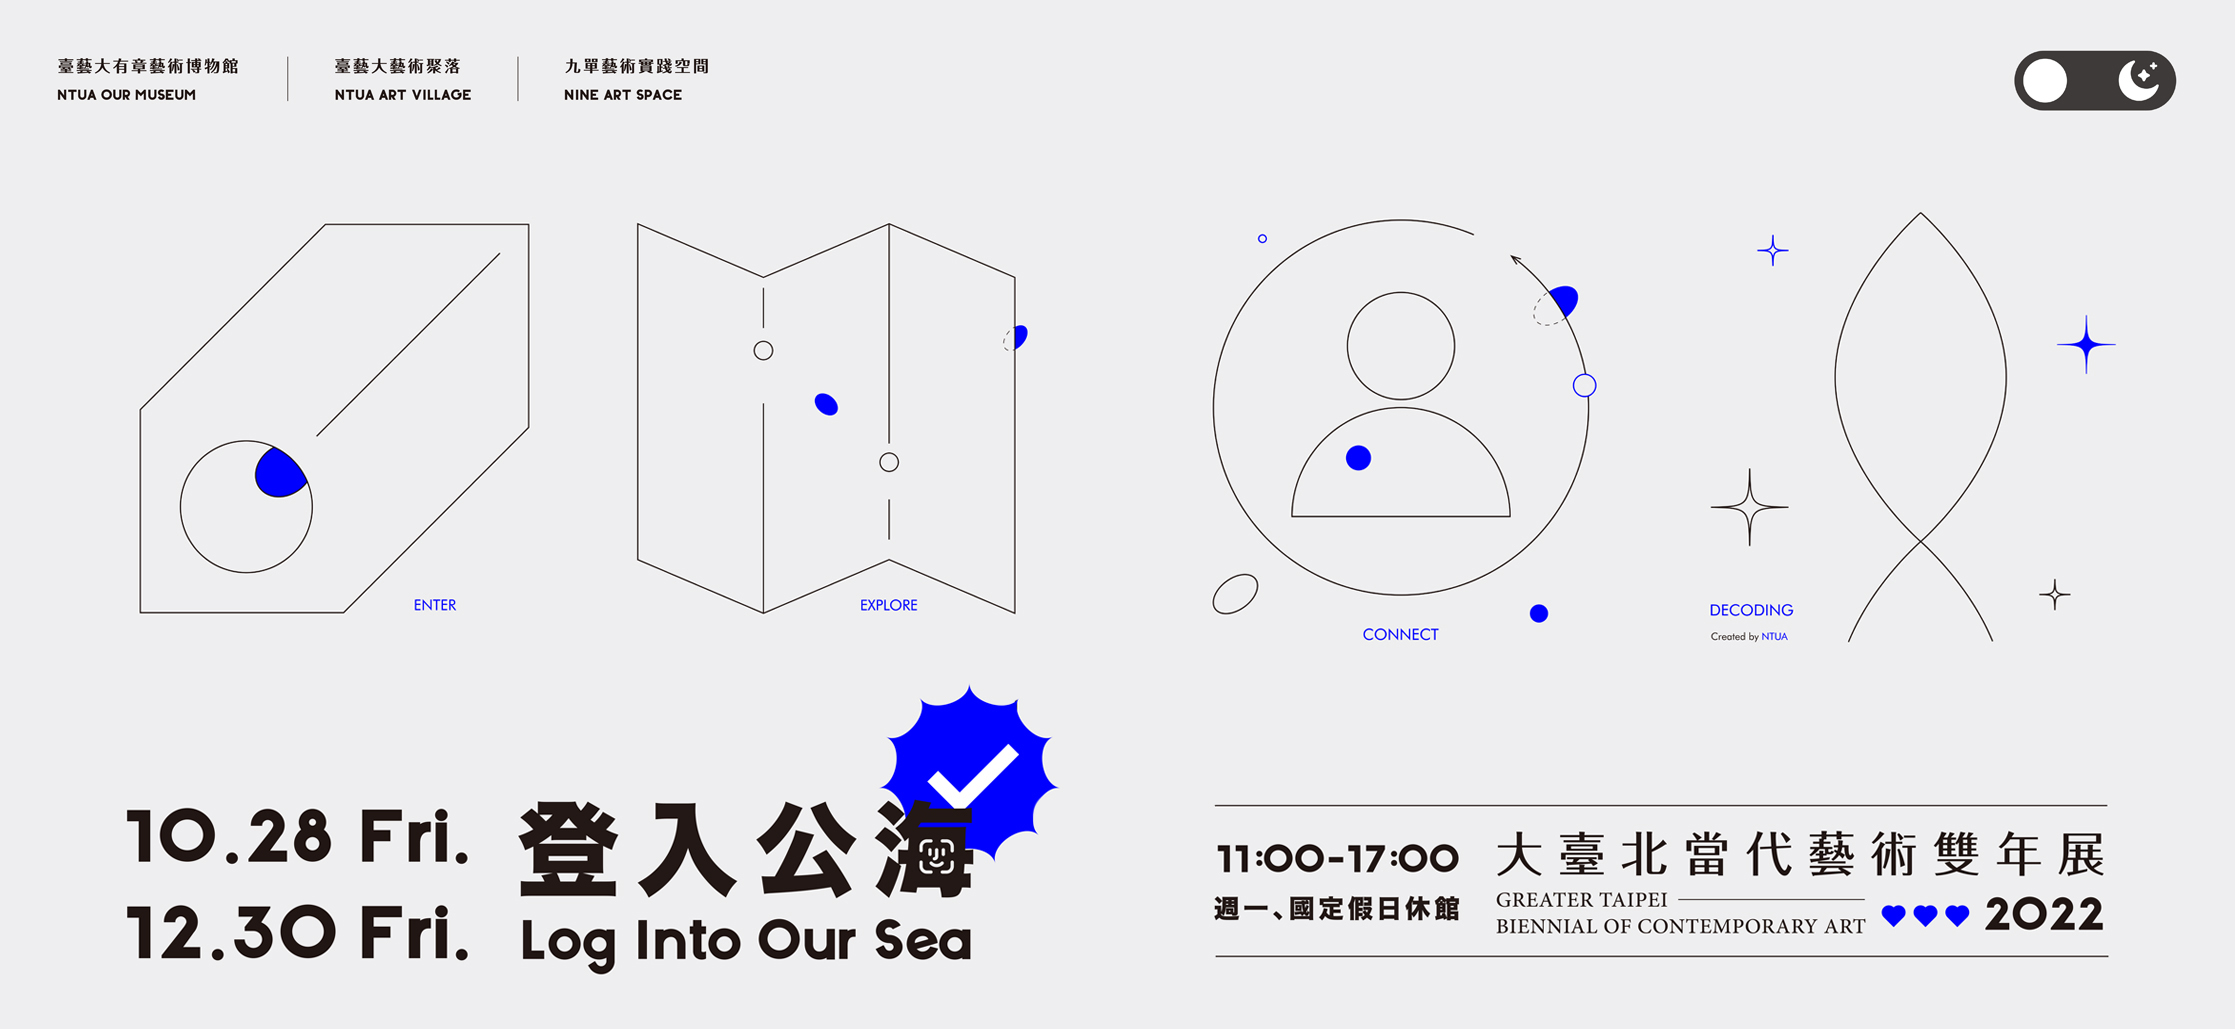 2022大臺北當代藝術雙年展《登入公海》